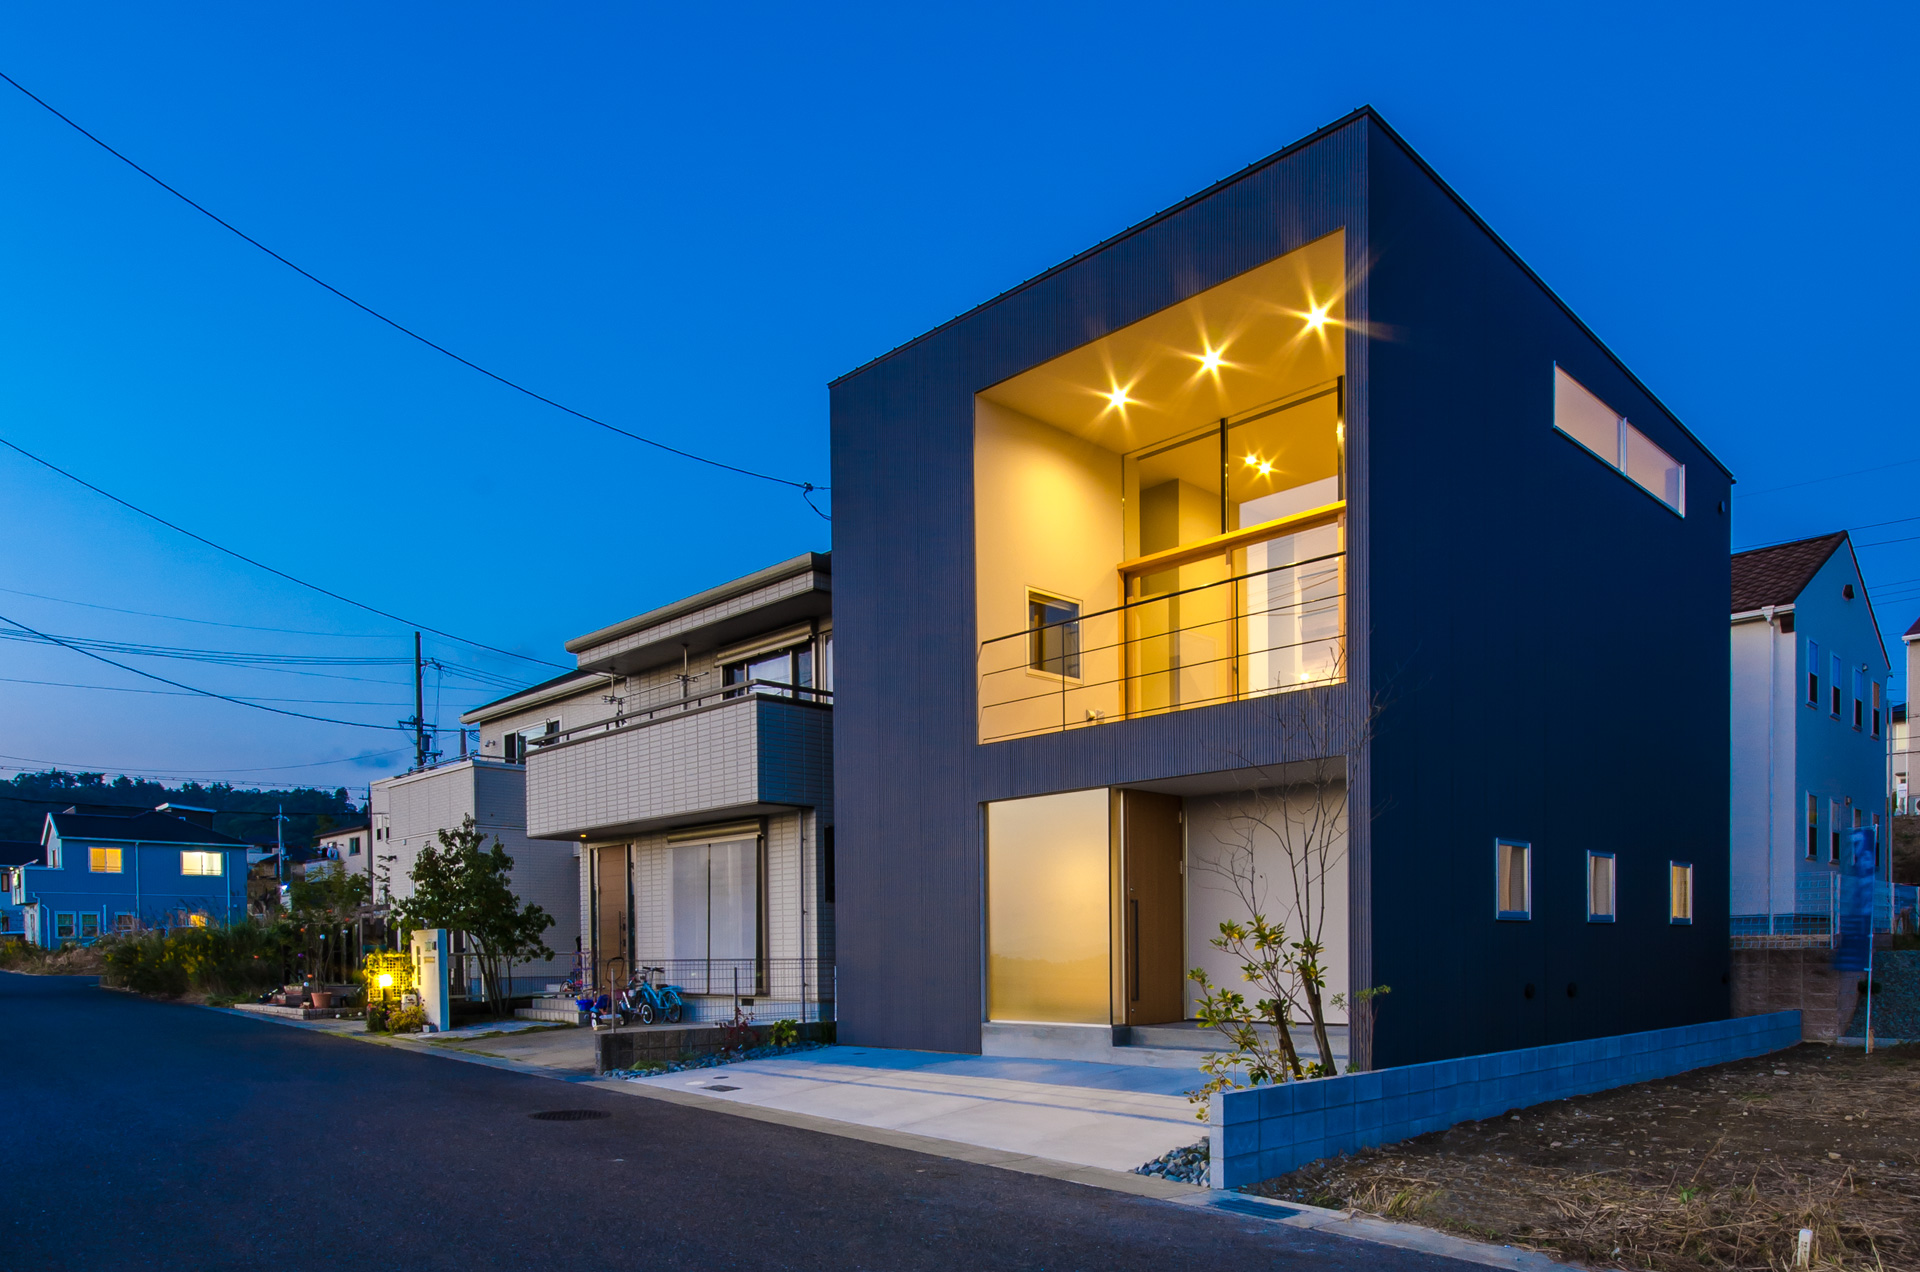 大阪府箕面市に計画された注文住宅,眺望の良い住まい,夕景の写真